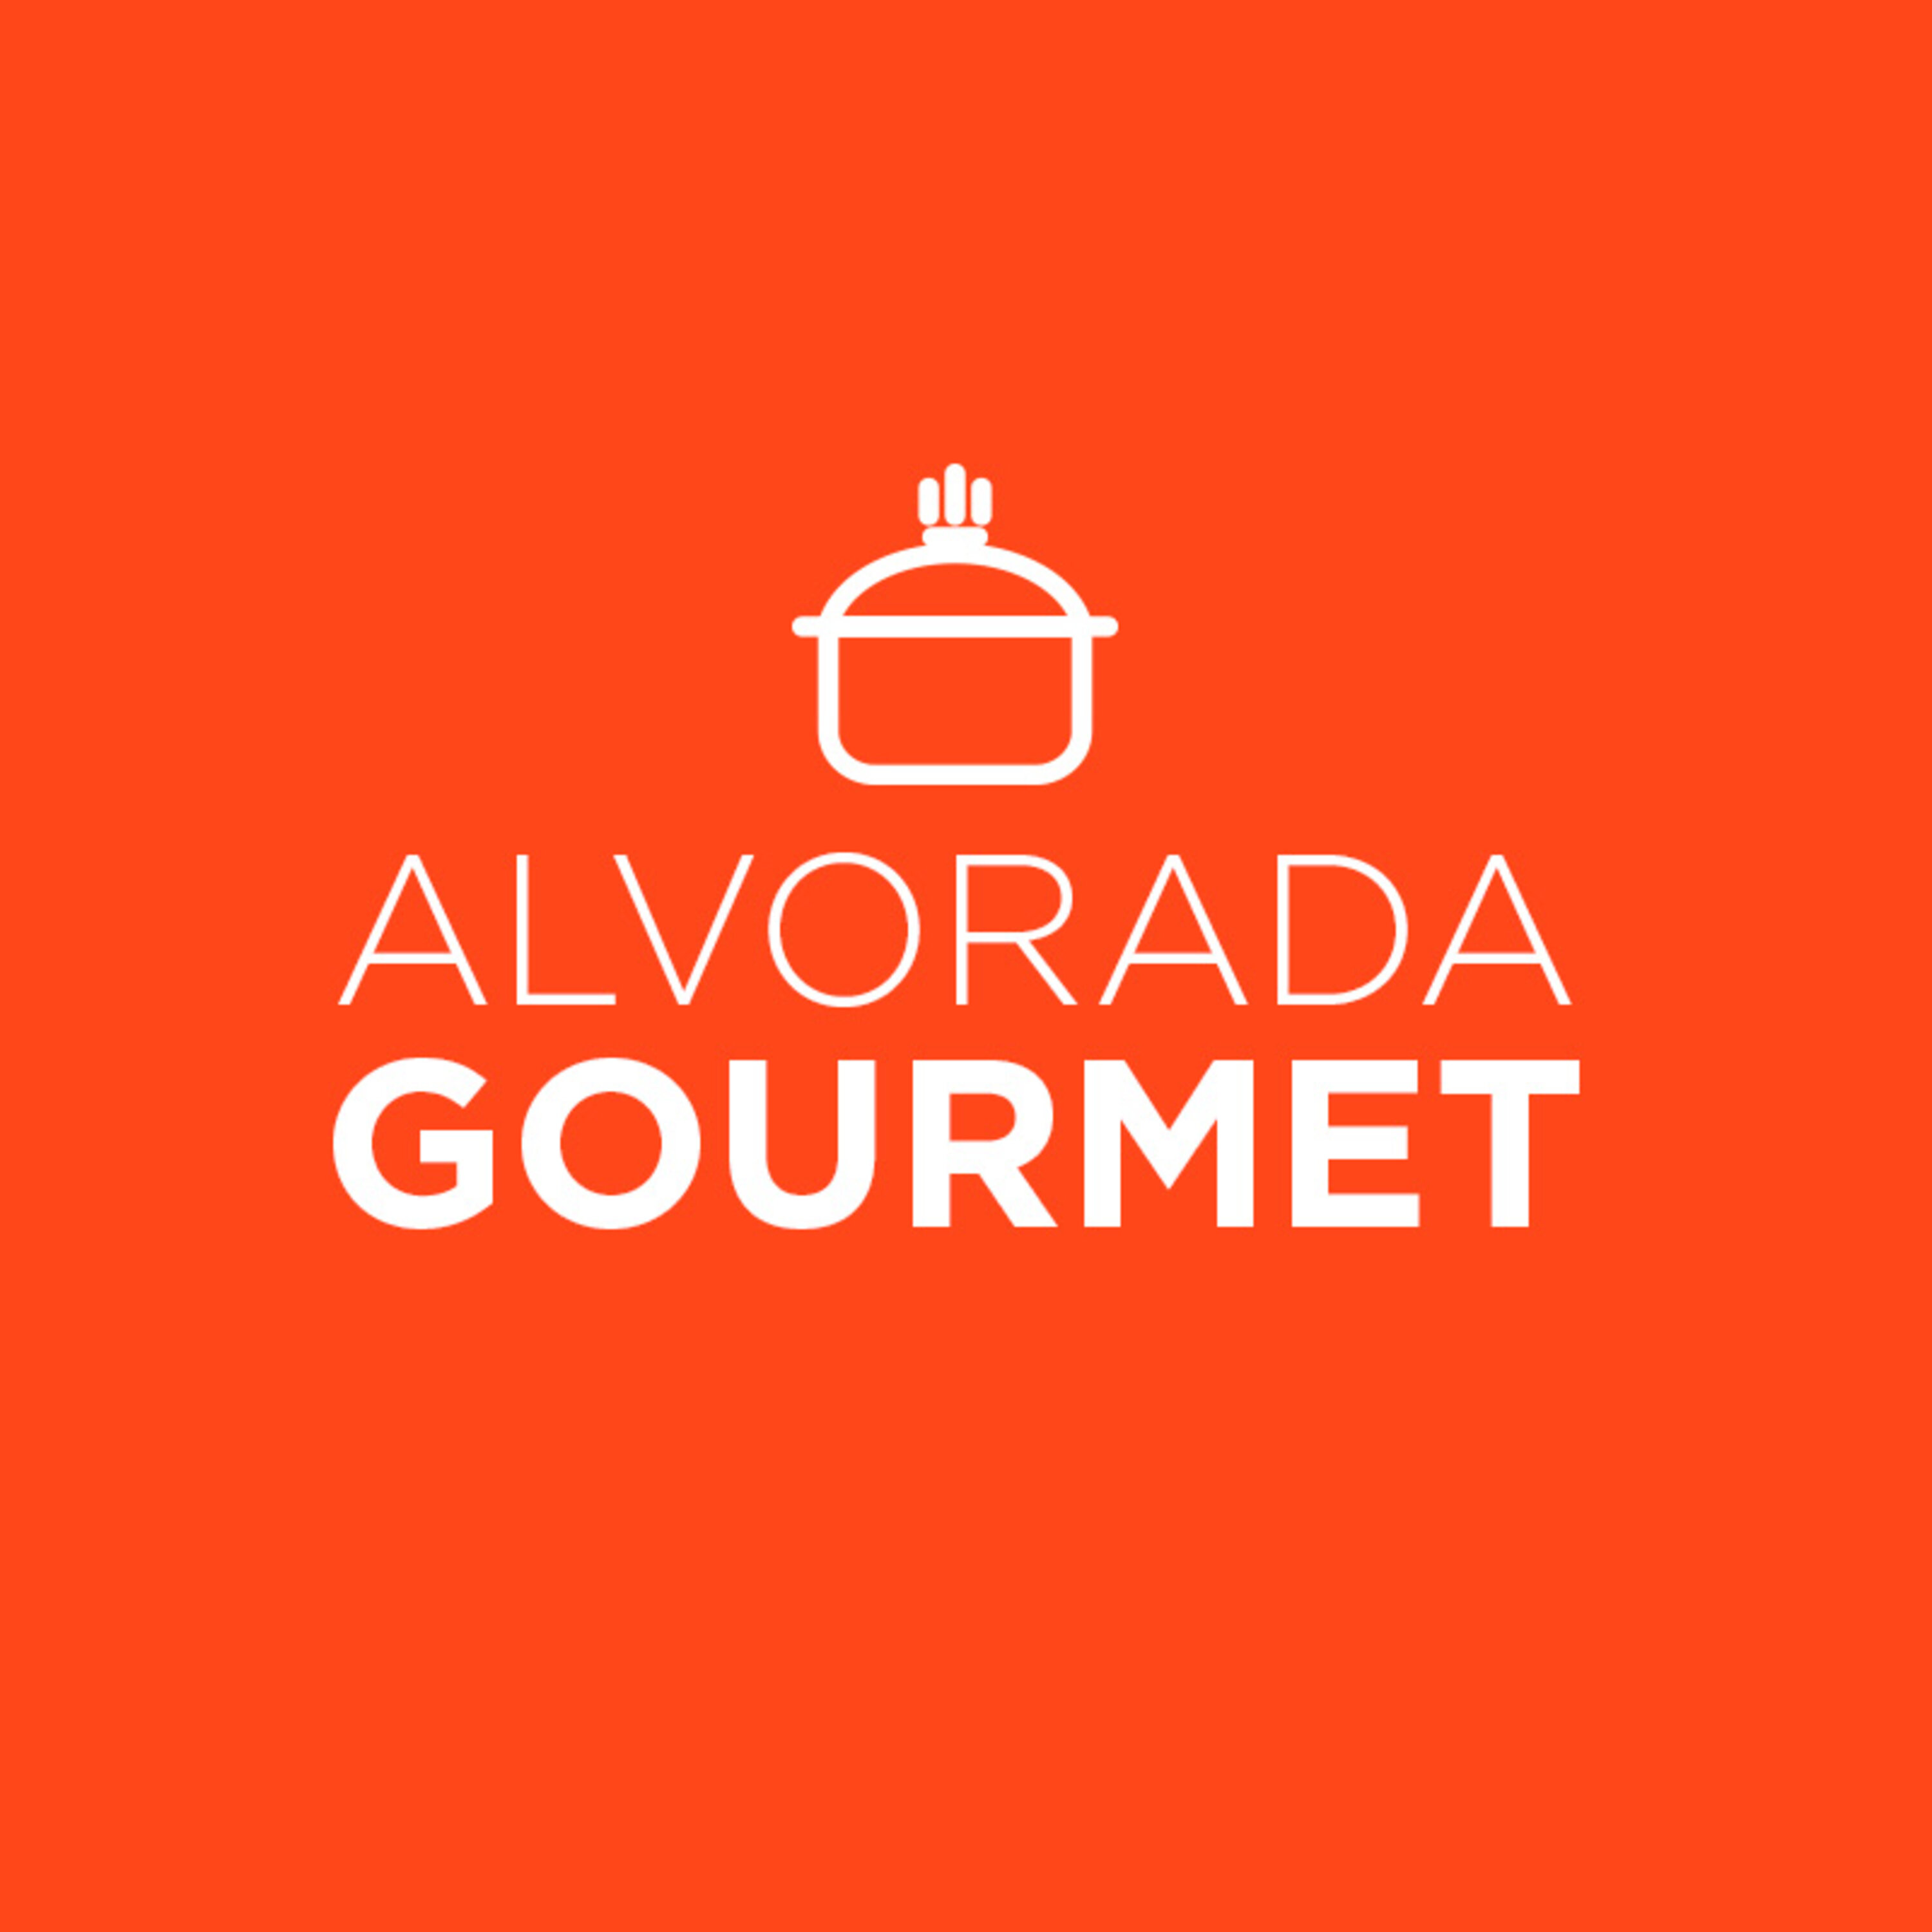 Alvorada Gourmet - Feijão preto